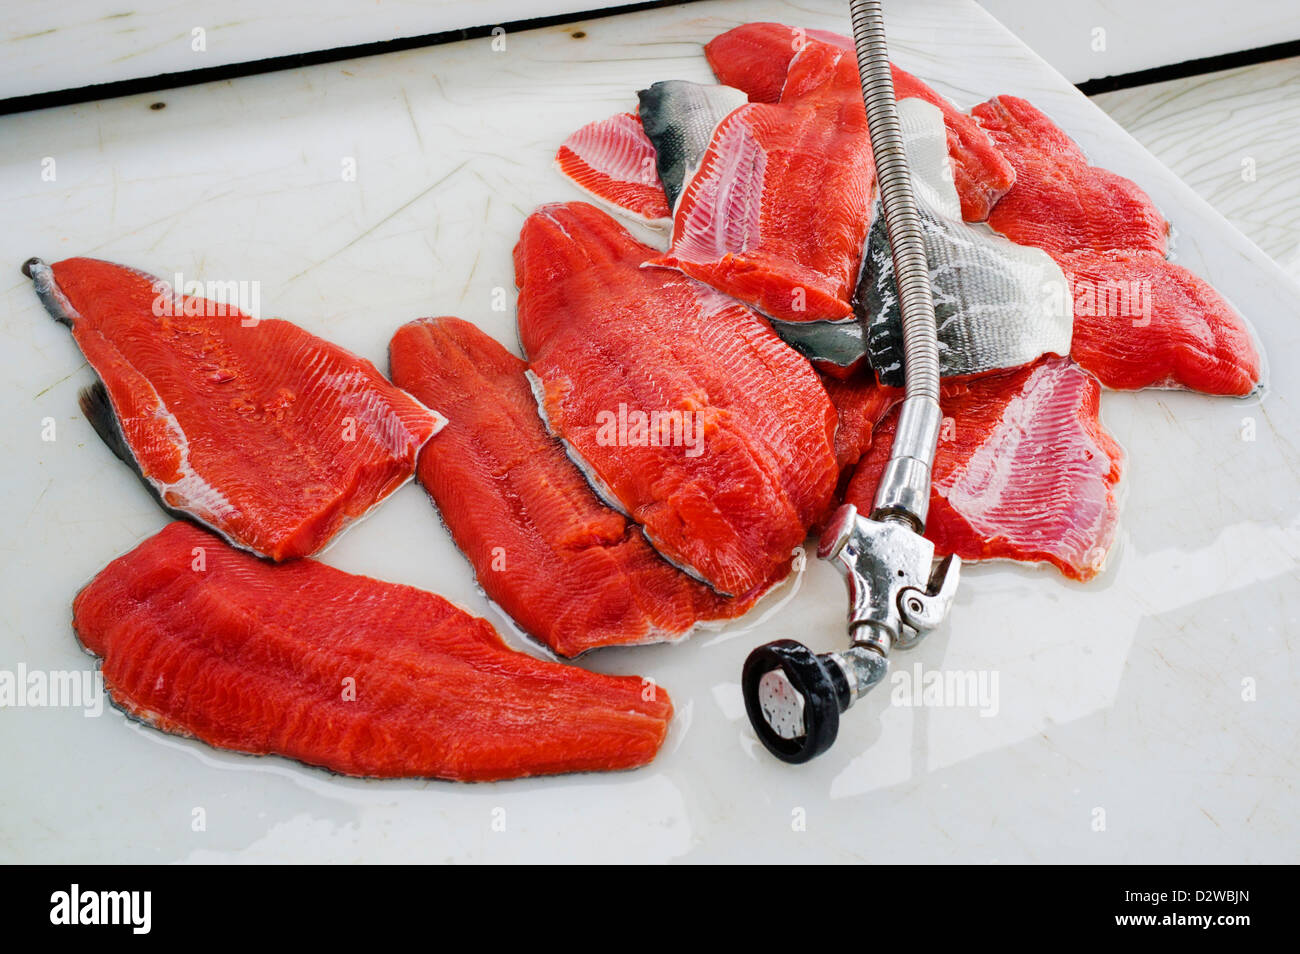 Argento, o Coho di filetti di salmone. Pescato fresco, dock di Seward, Alaska, STATI UNITI D'AMERICA Foto Stock